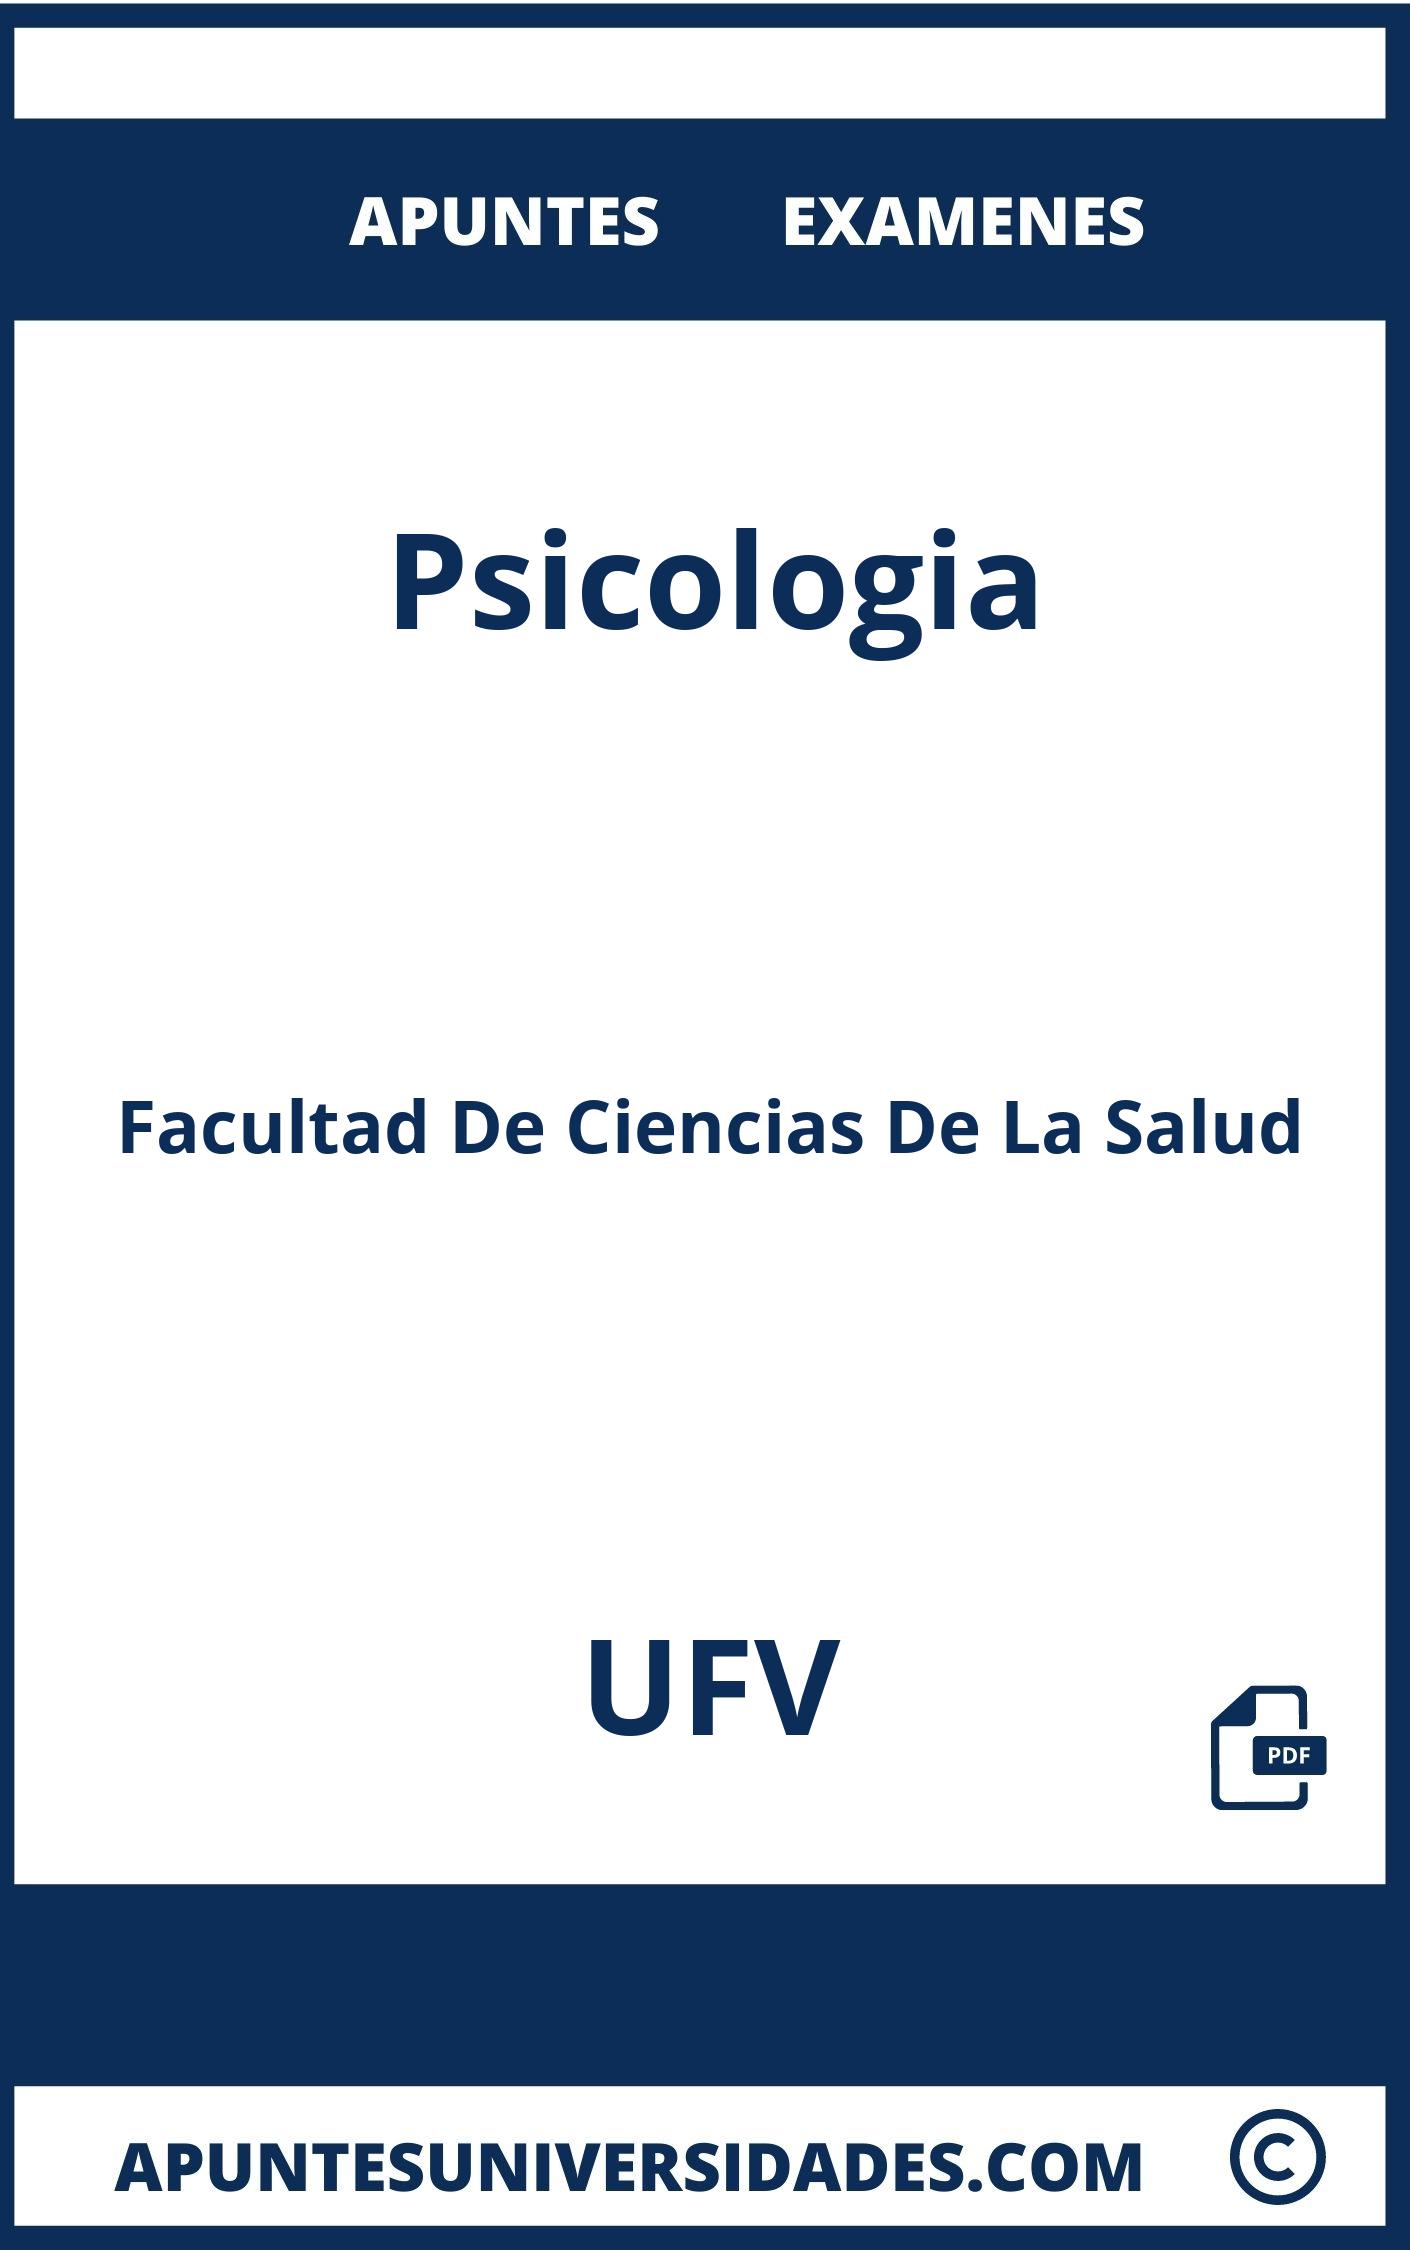 Examenes y Apuntes de Psicologia UFV